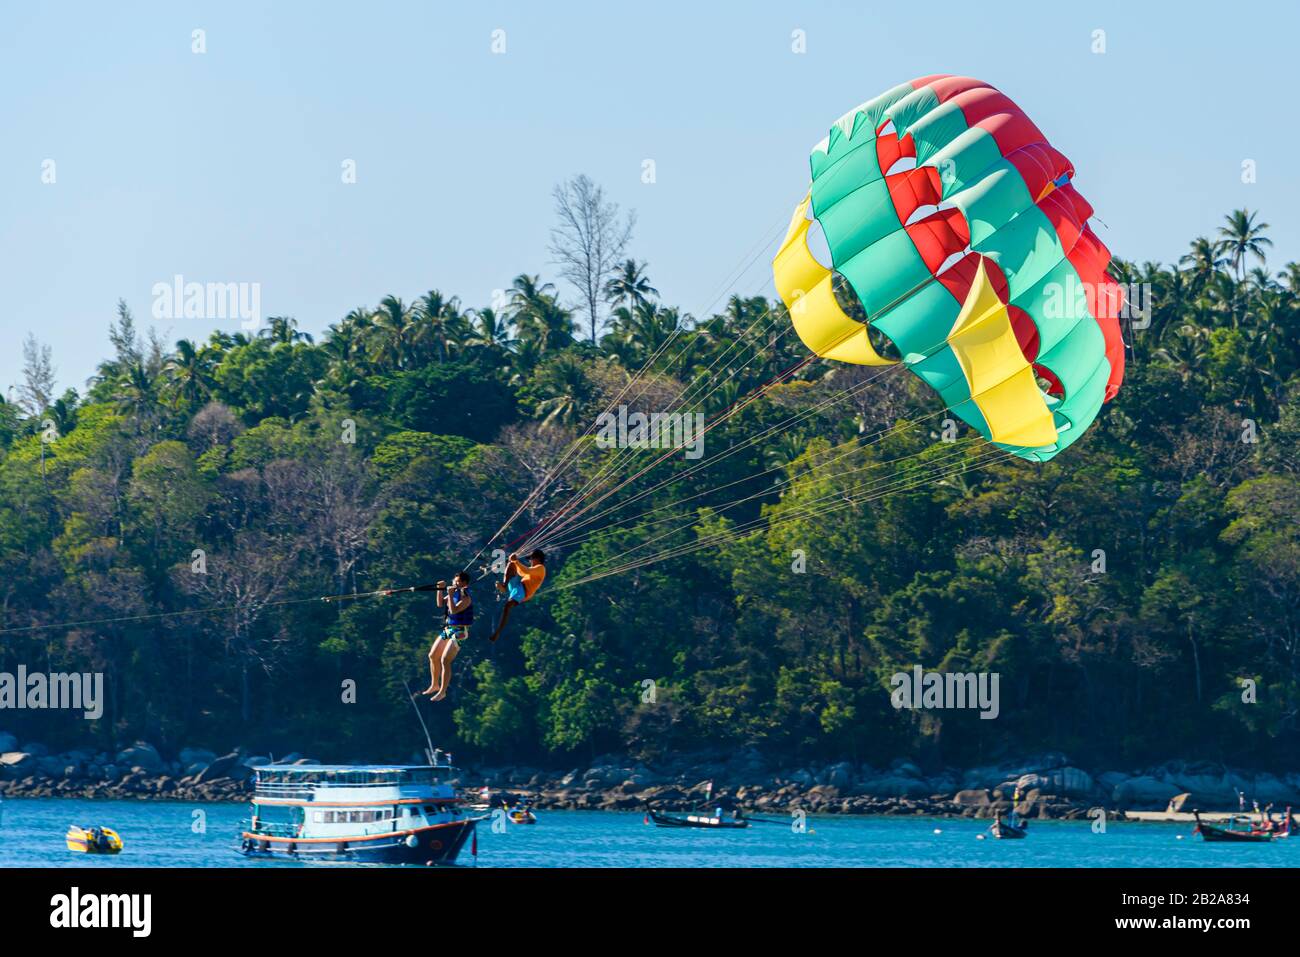 Tourist in einen Parascending Fallschirm getappt, während ein Thailänder an den Seilen sitzt und hält, Kata Beach, Phuket, Thailand Stockfoto